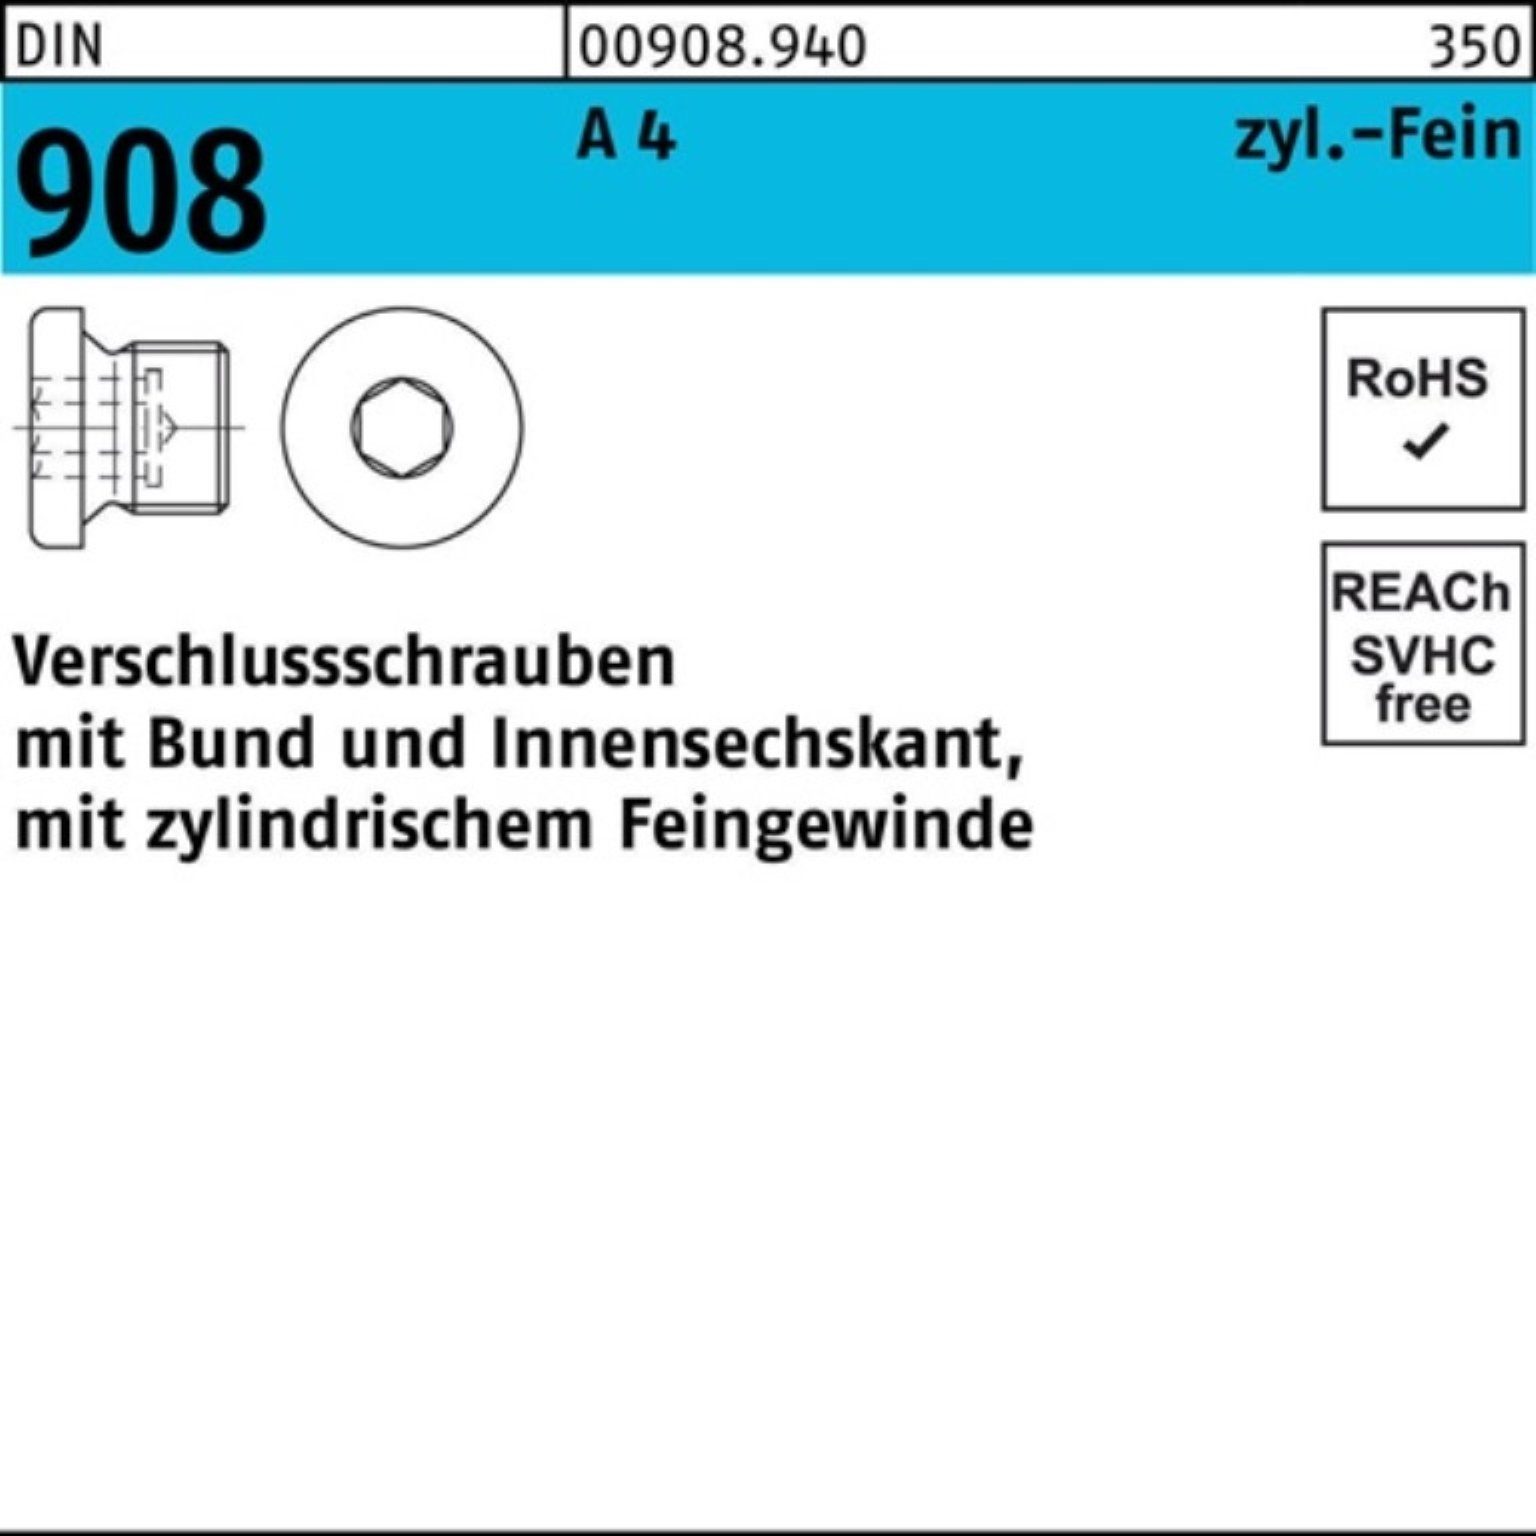 A DIN 100 M12x 100er 908 Schraube 4 1,5 Pack Verschlußschraube Bund/Innen-6kt Reyher